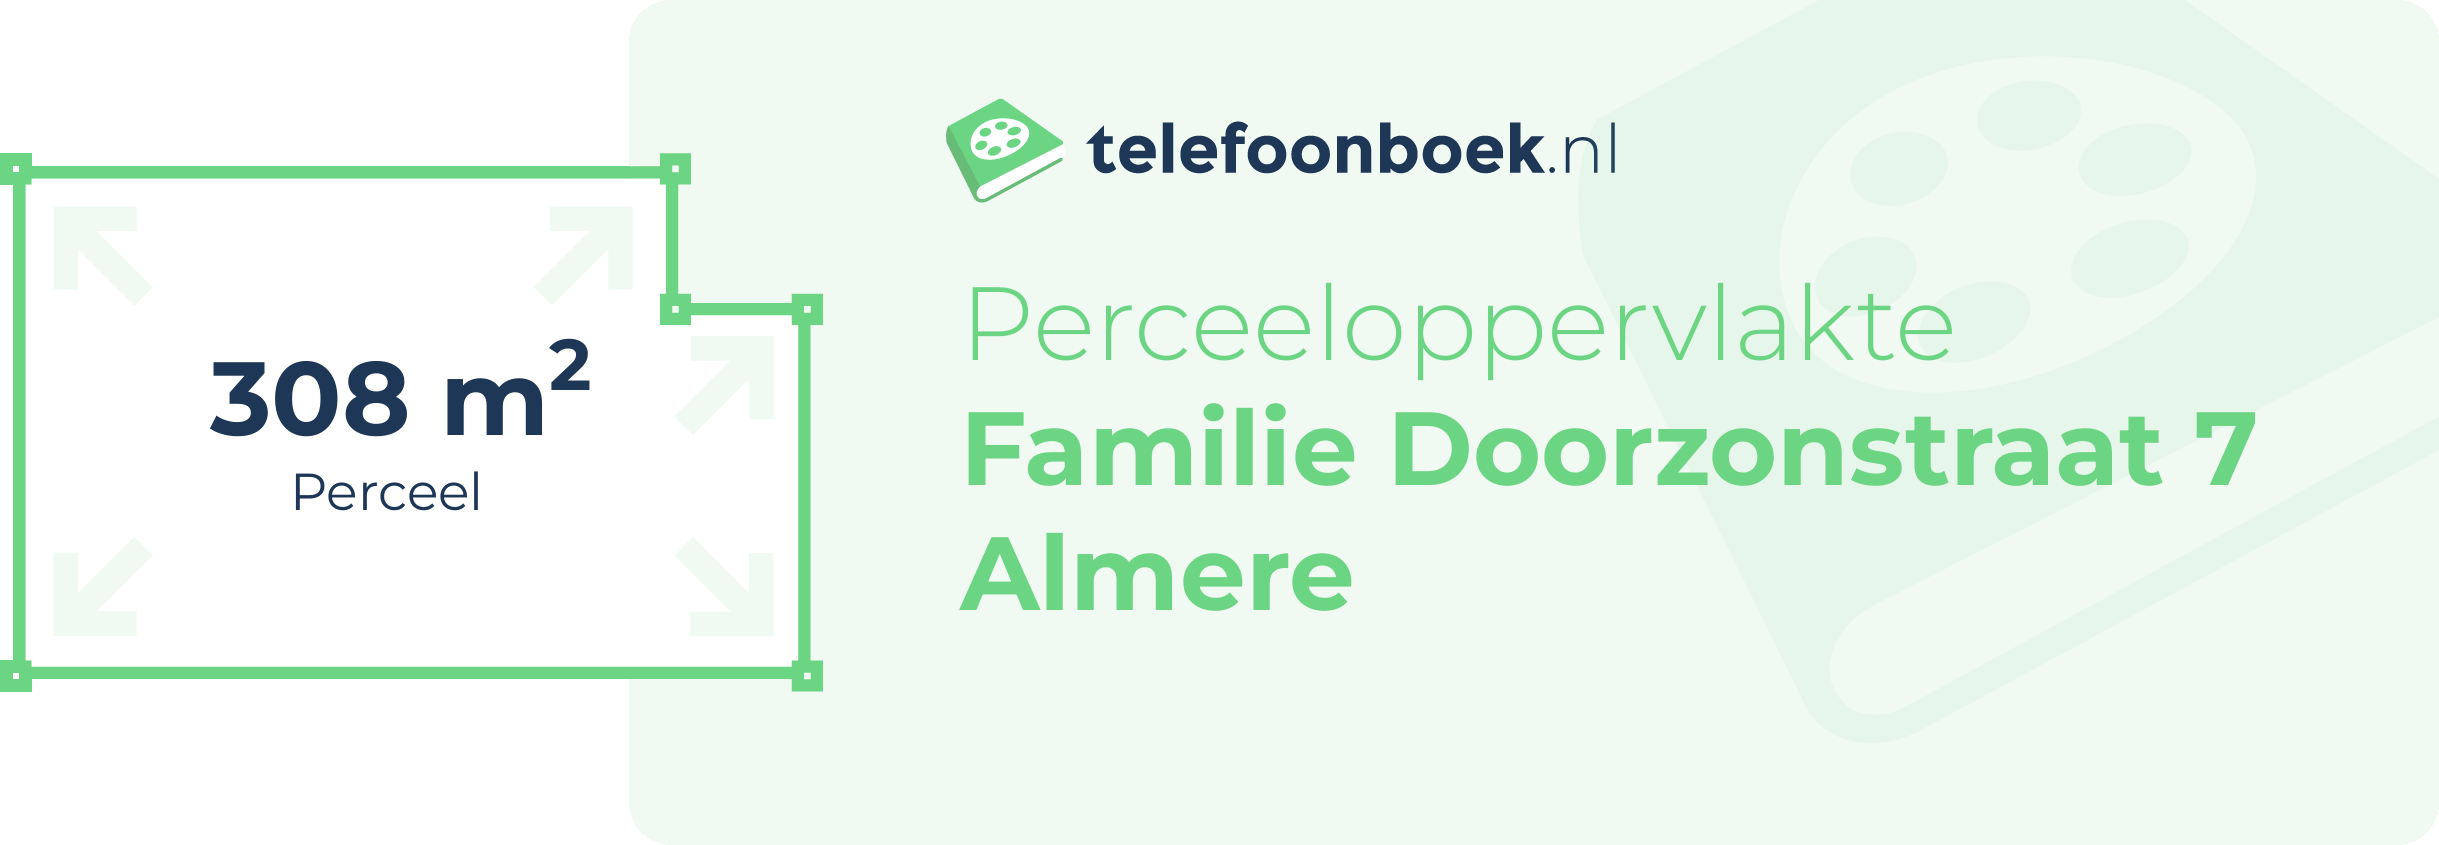 Perceeloppervlakte Familie Doorzonstraat 7 Almere